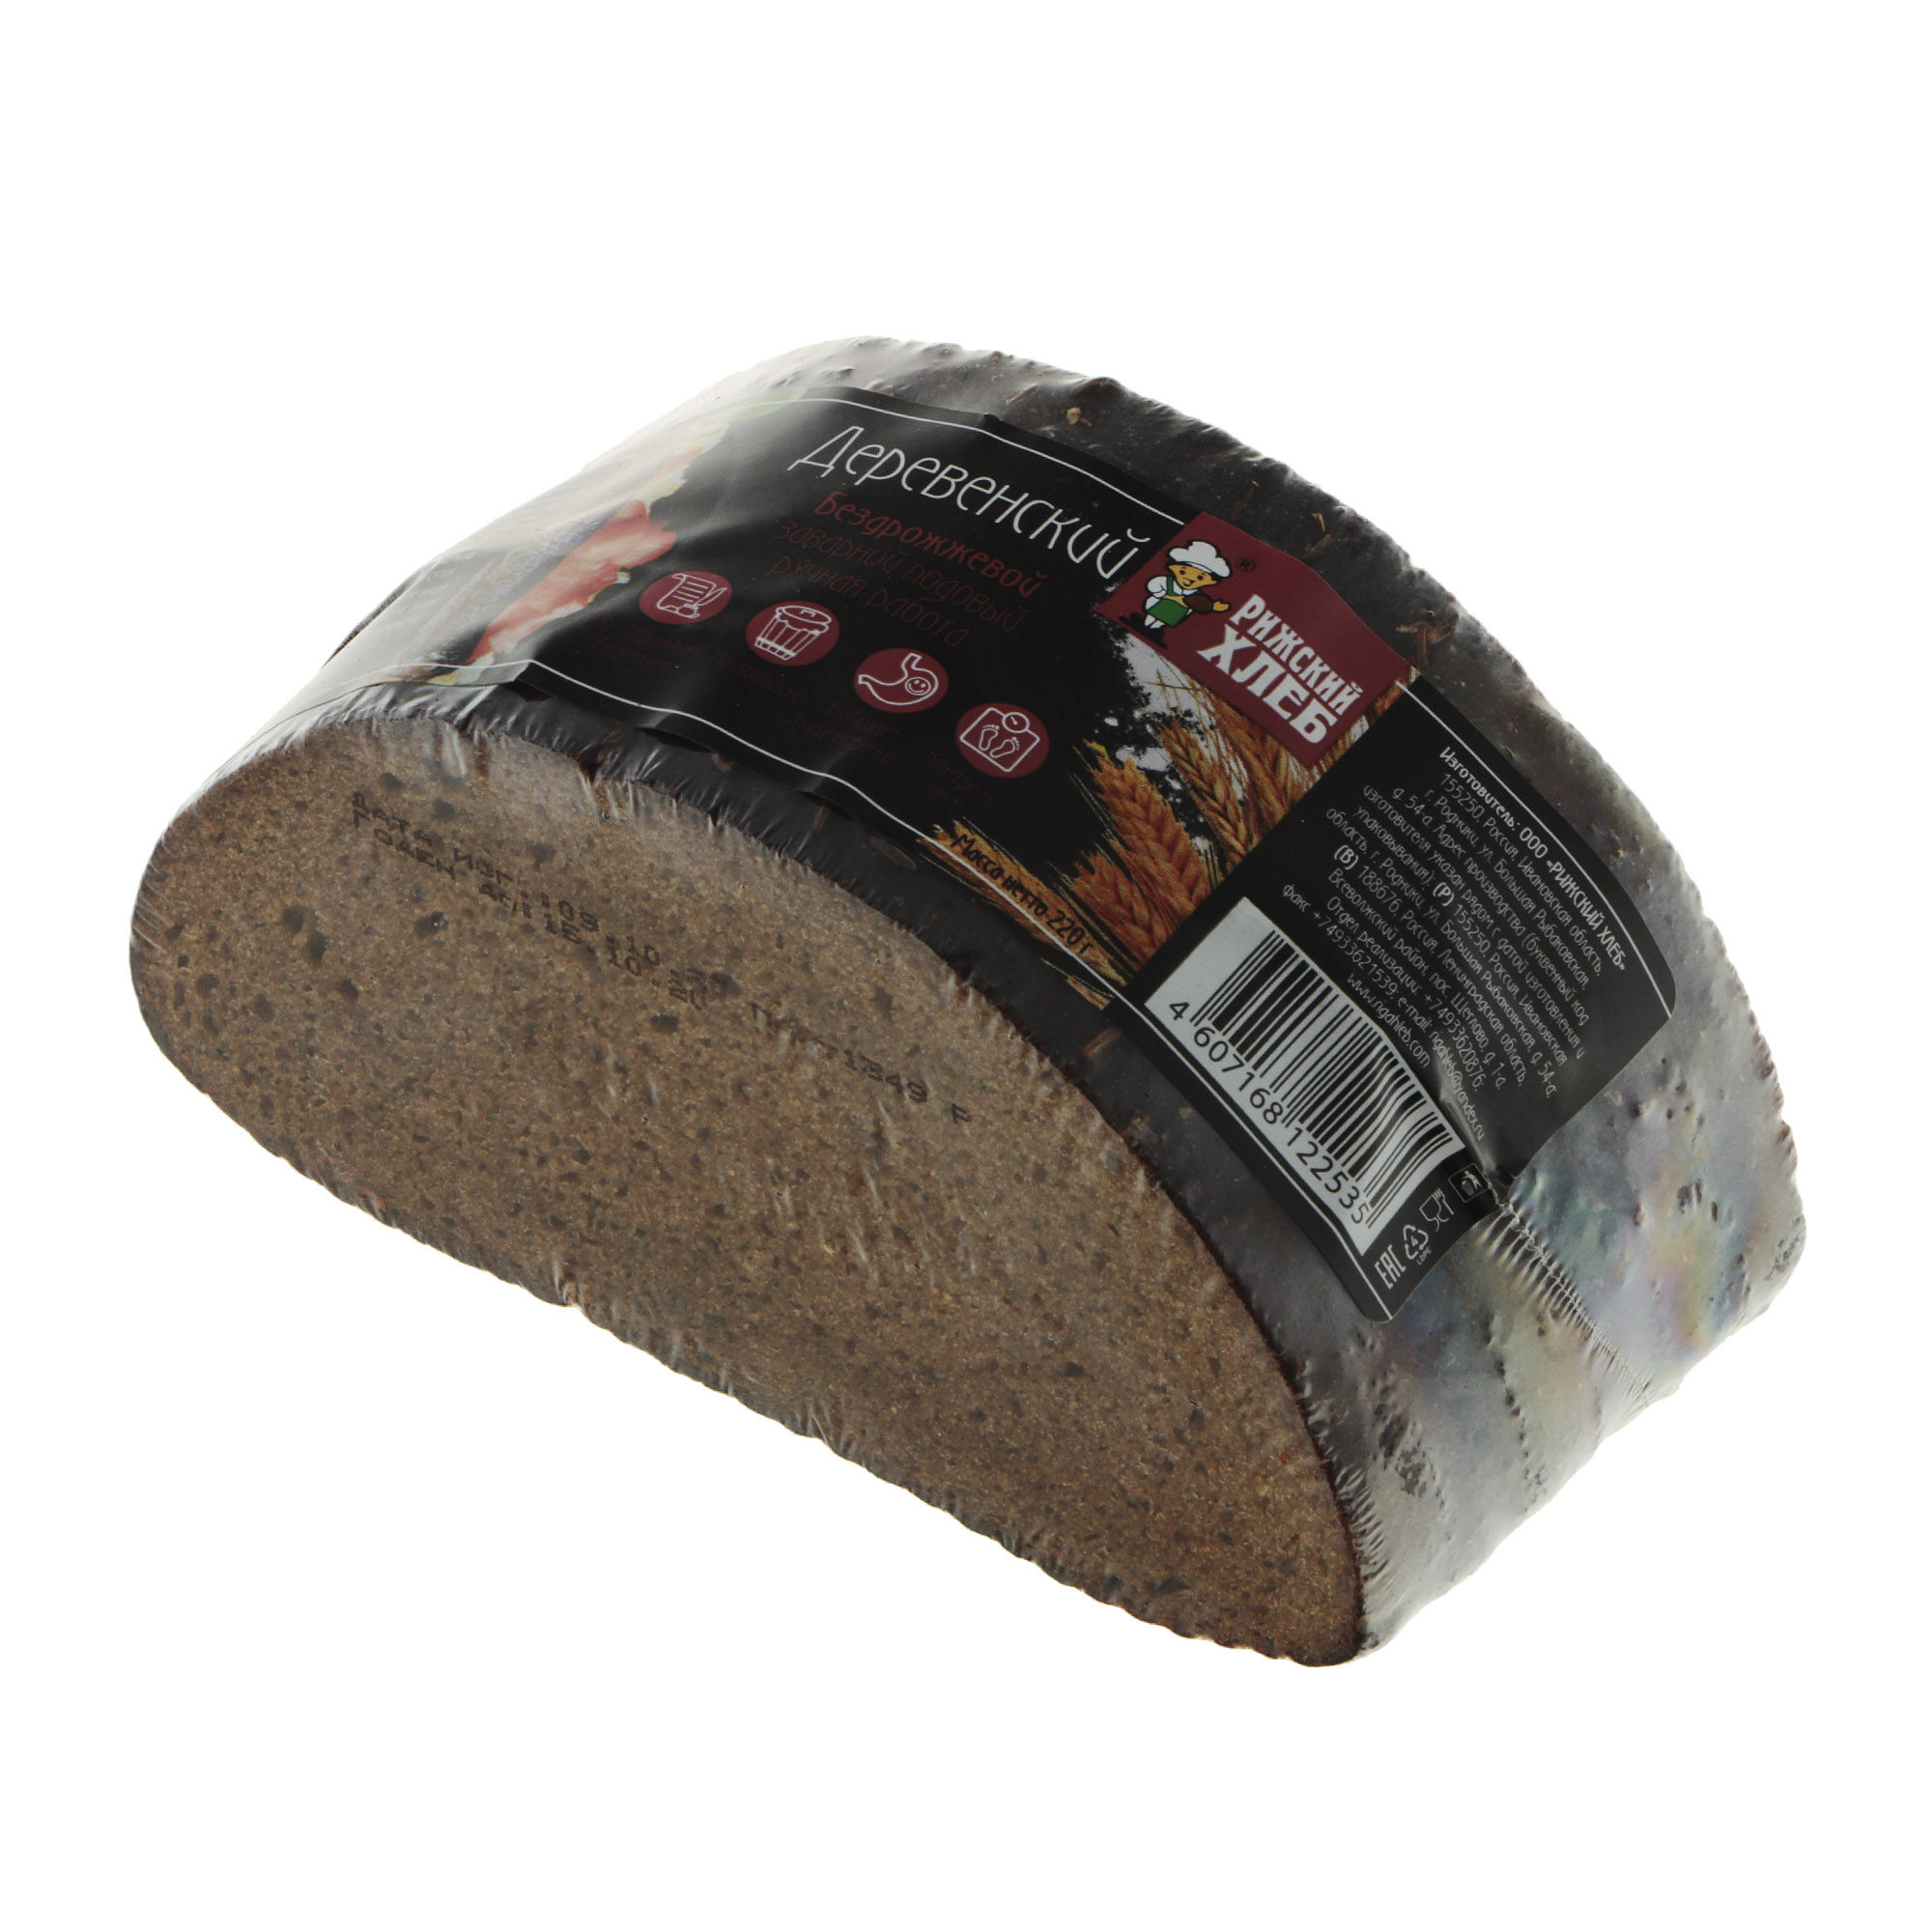 Хлеб Рижский хлеб деревенский 220 г хлебцы ржаные цельнозерновые wasa 275 гр